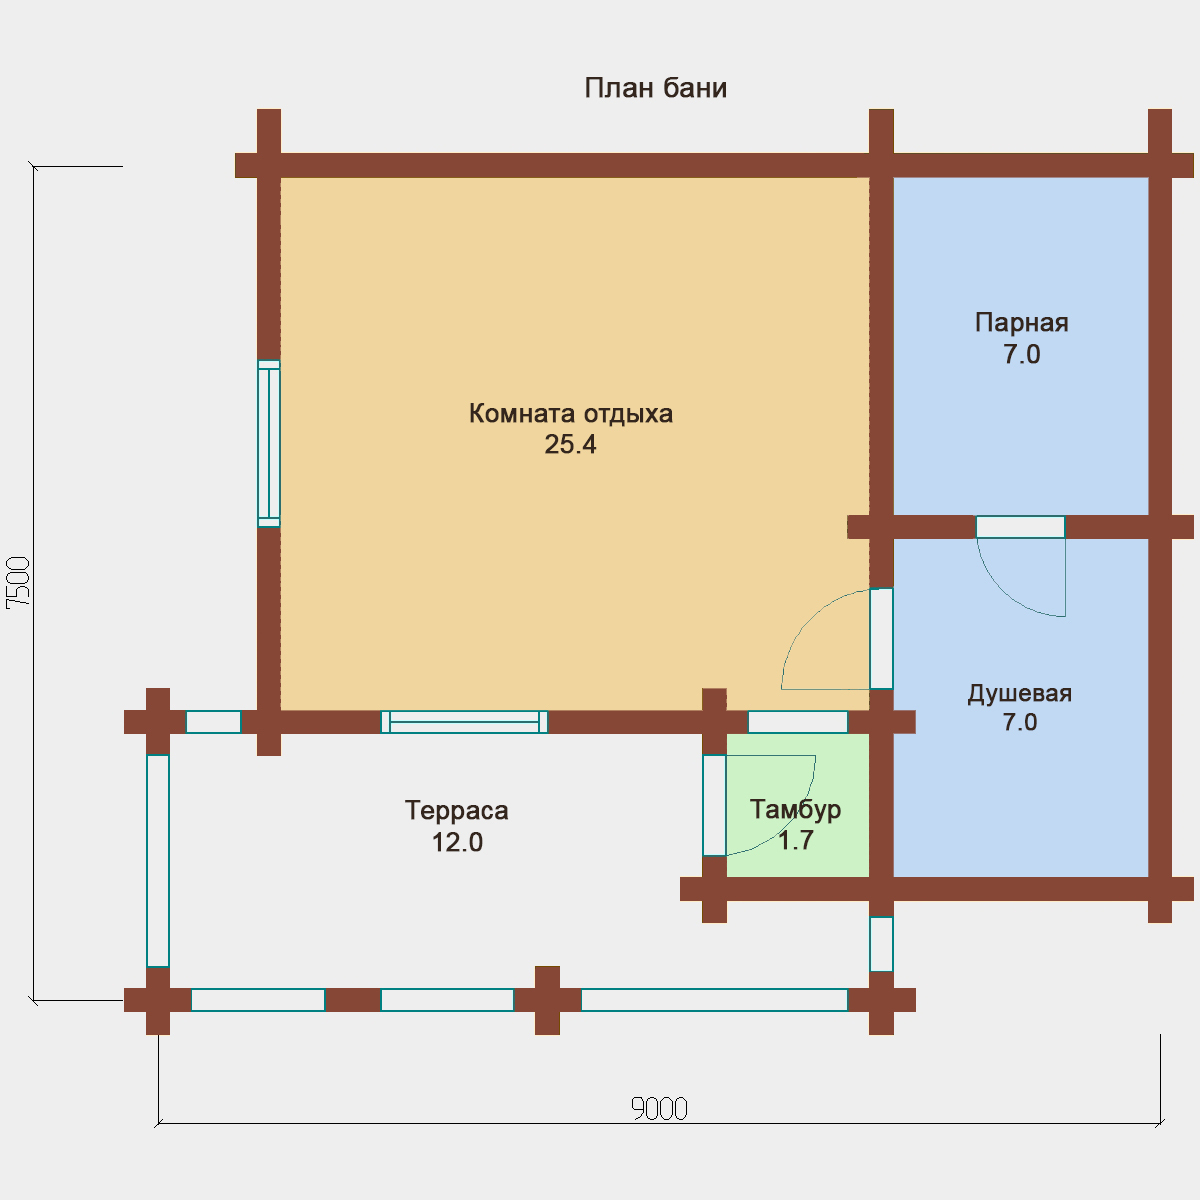 Проект бани размером 6х6: планировка, примеры готовых строений